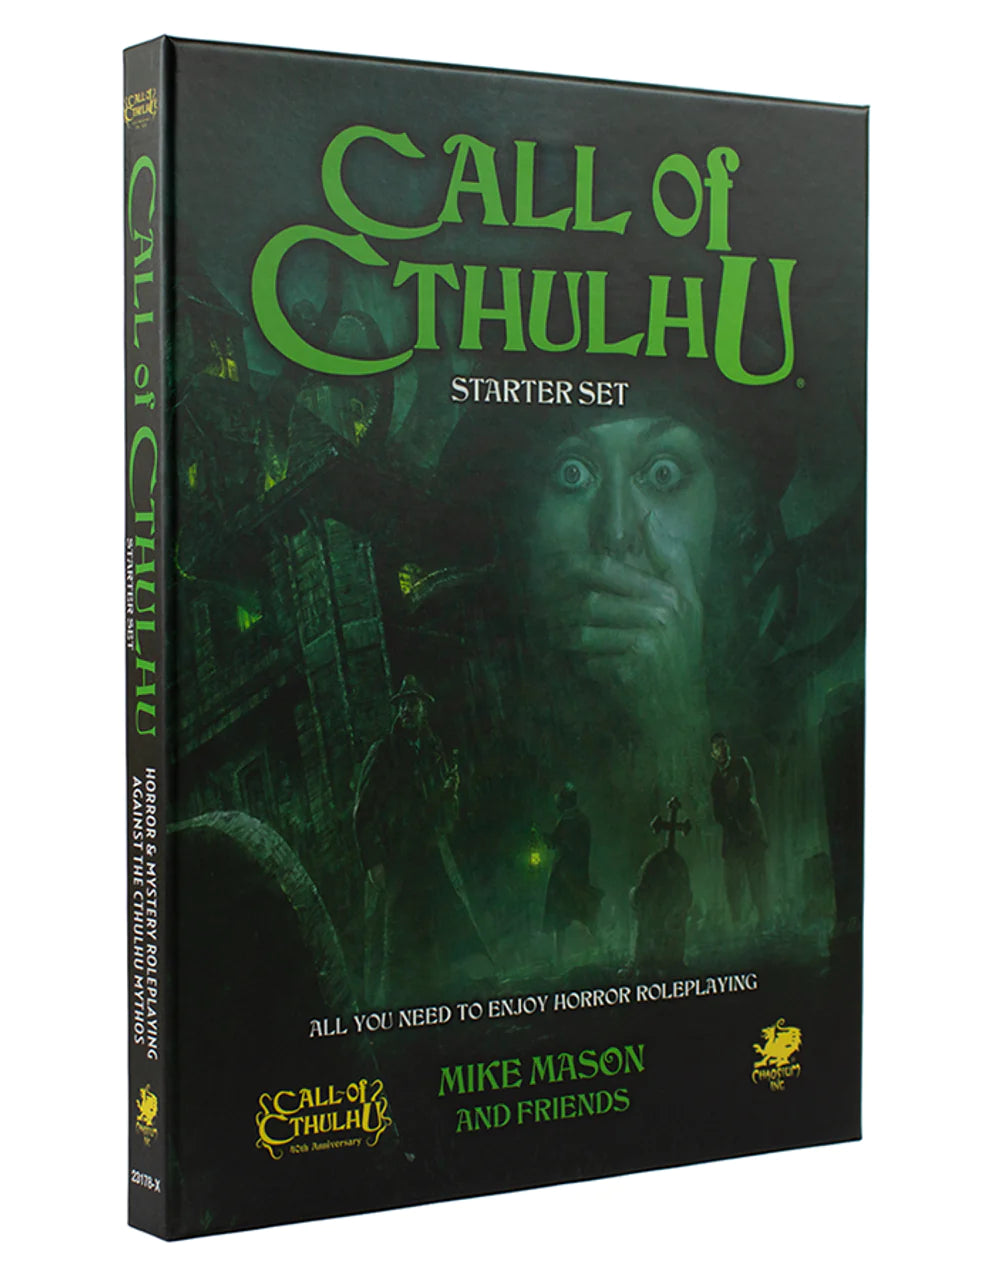 Call of Cthulhu 7E RPG: Starter Set